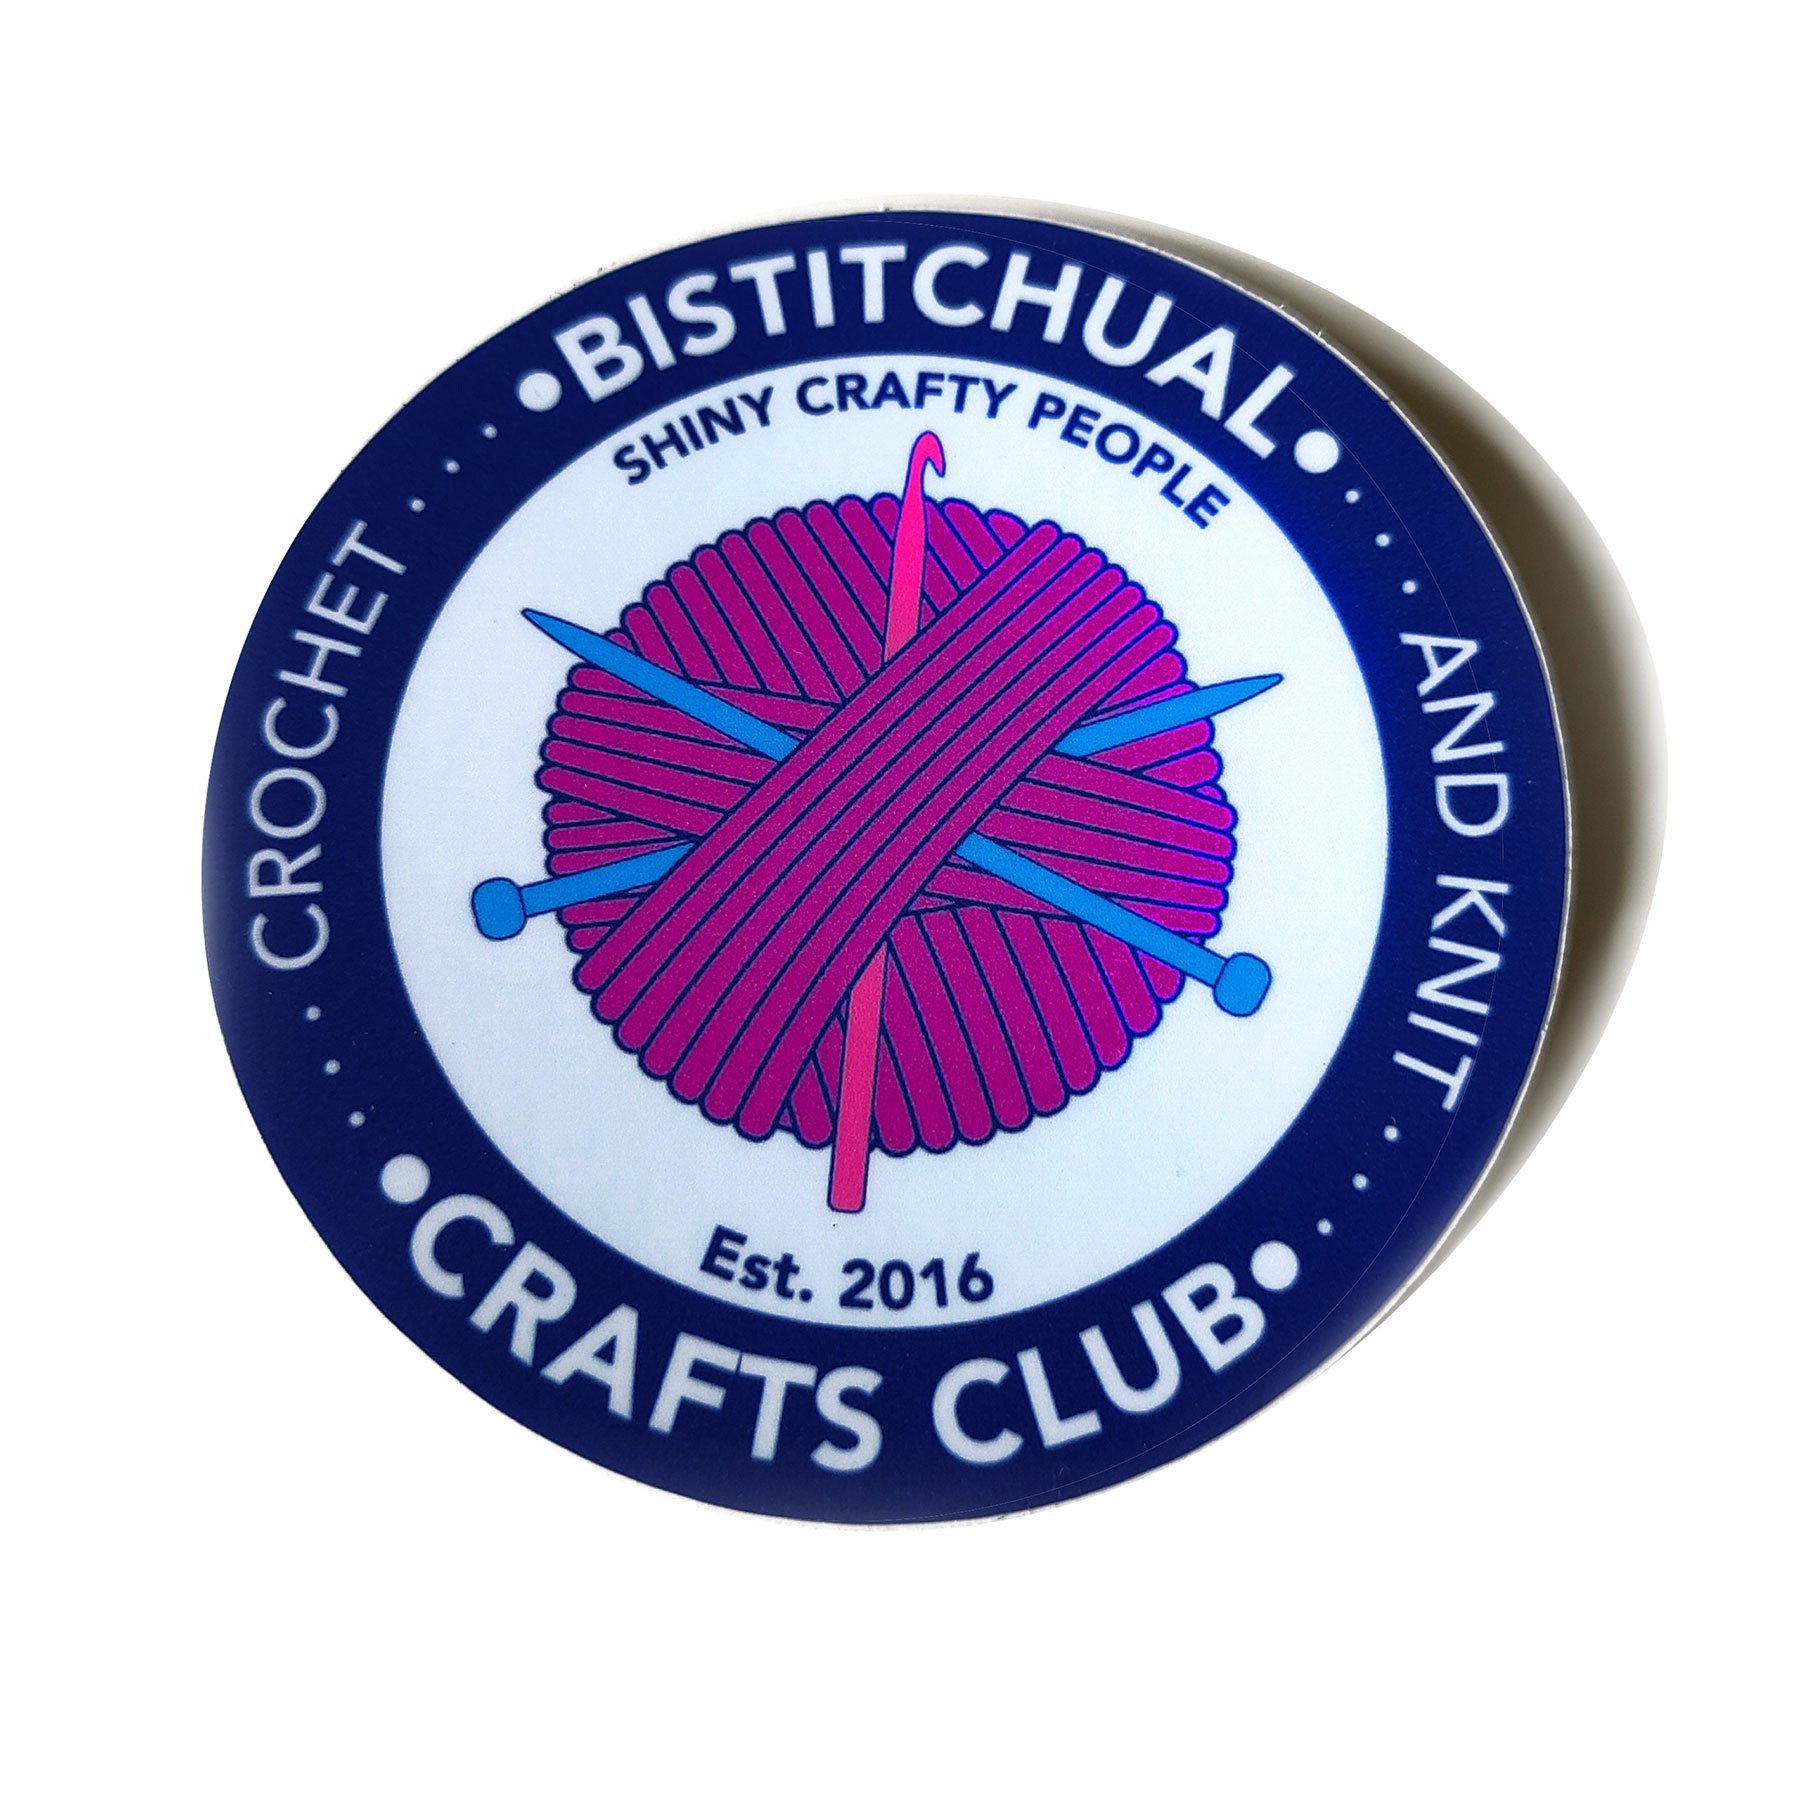 Bistitchual Crafts Club Super Sticker